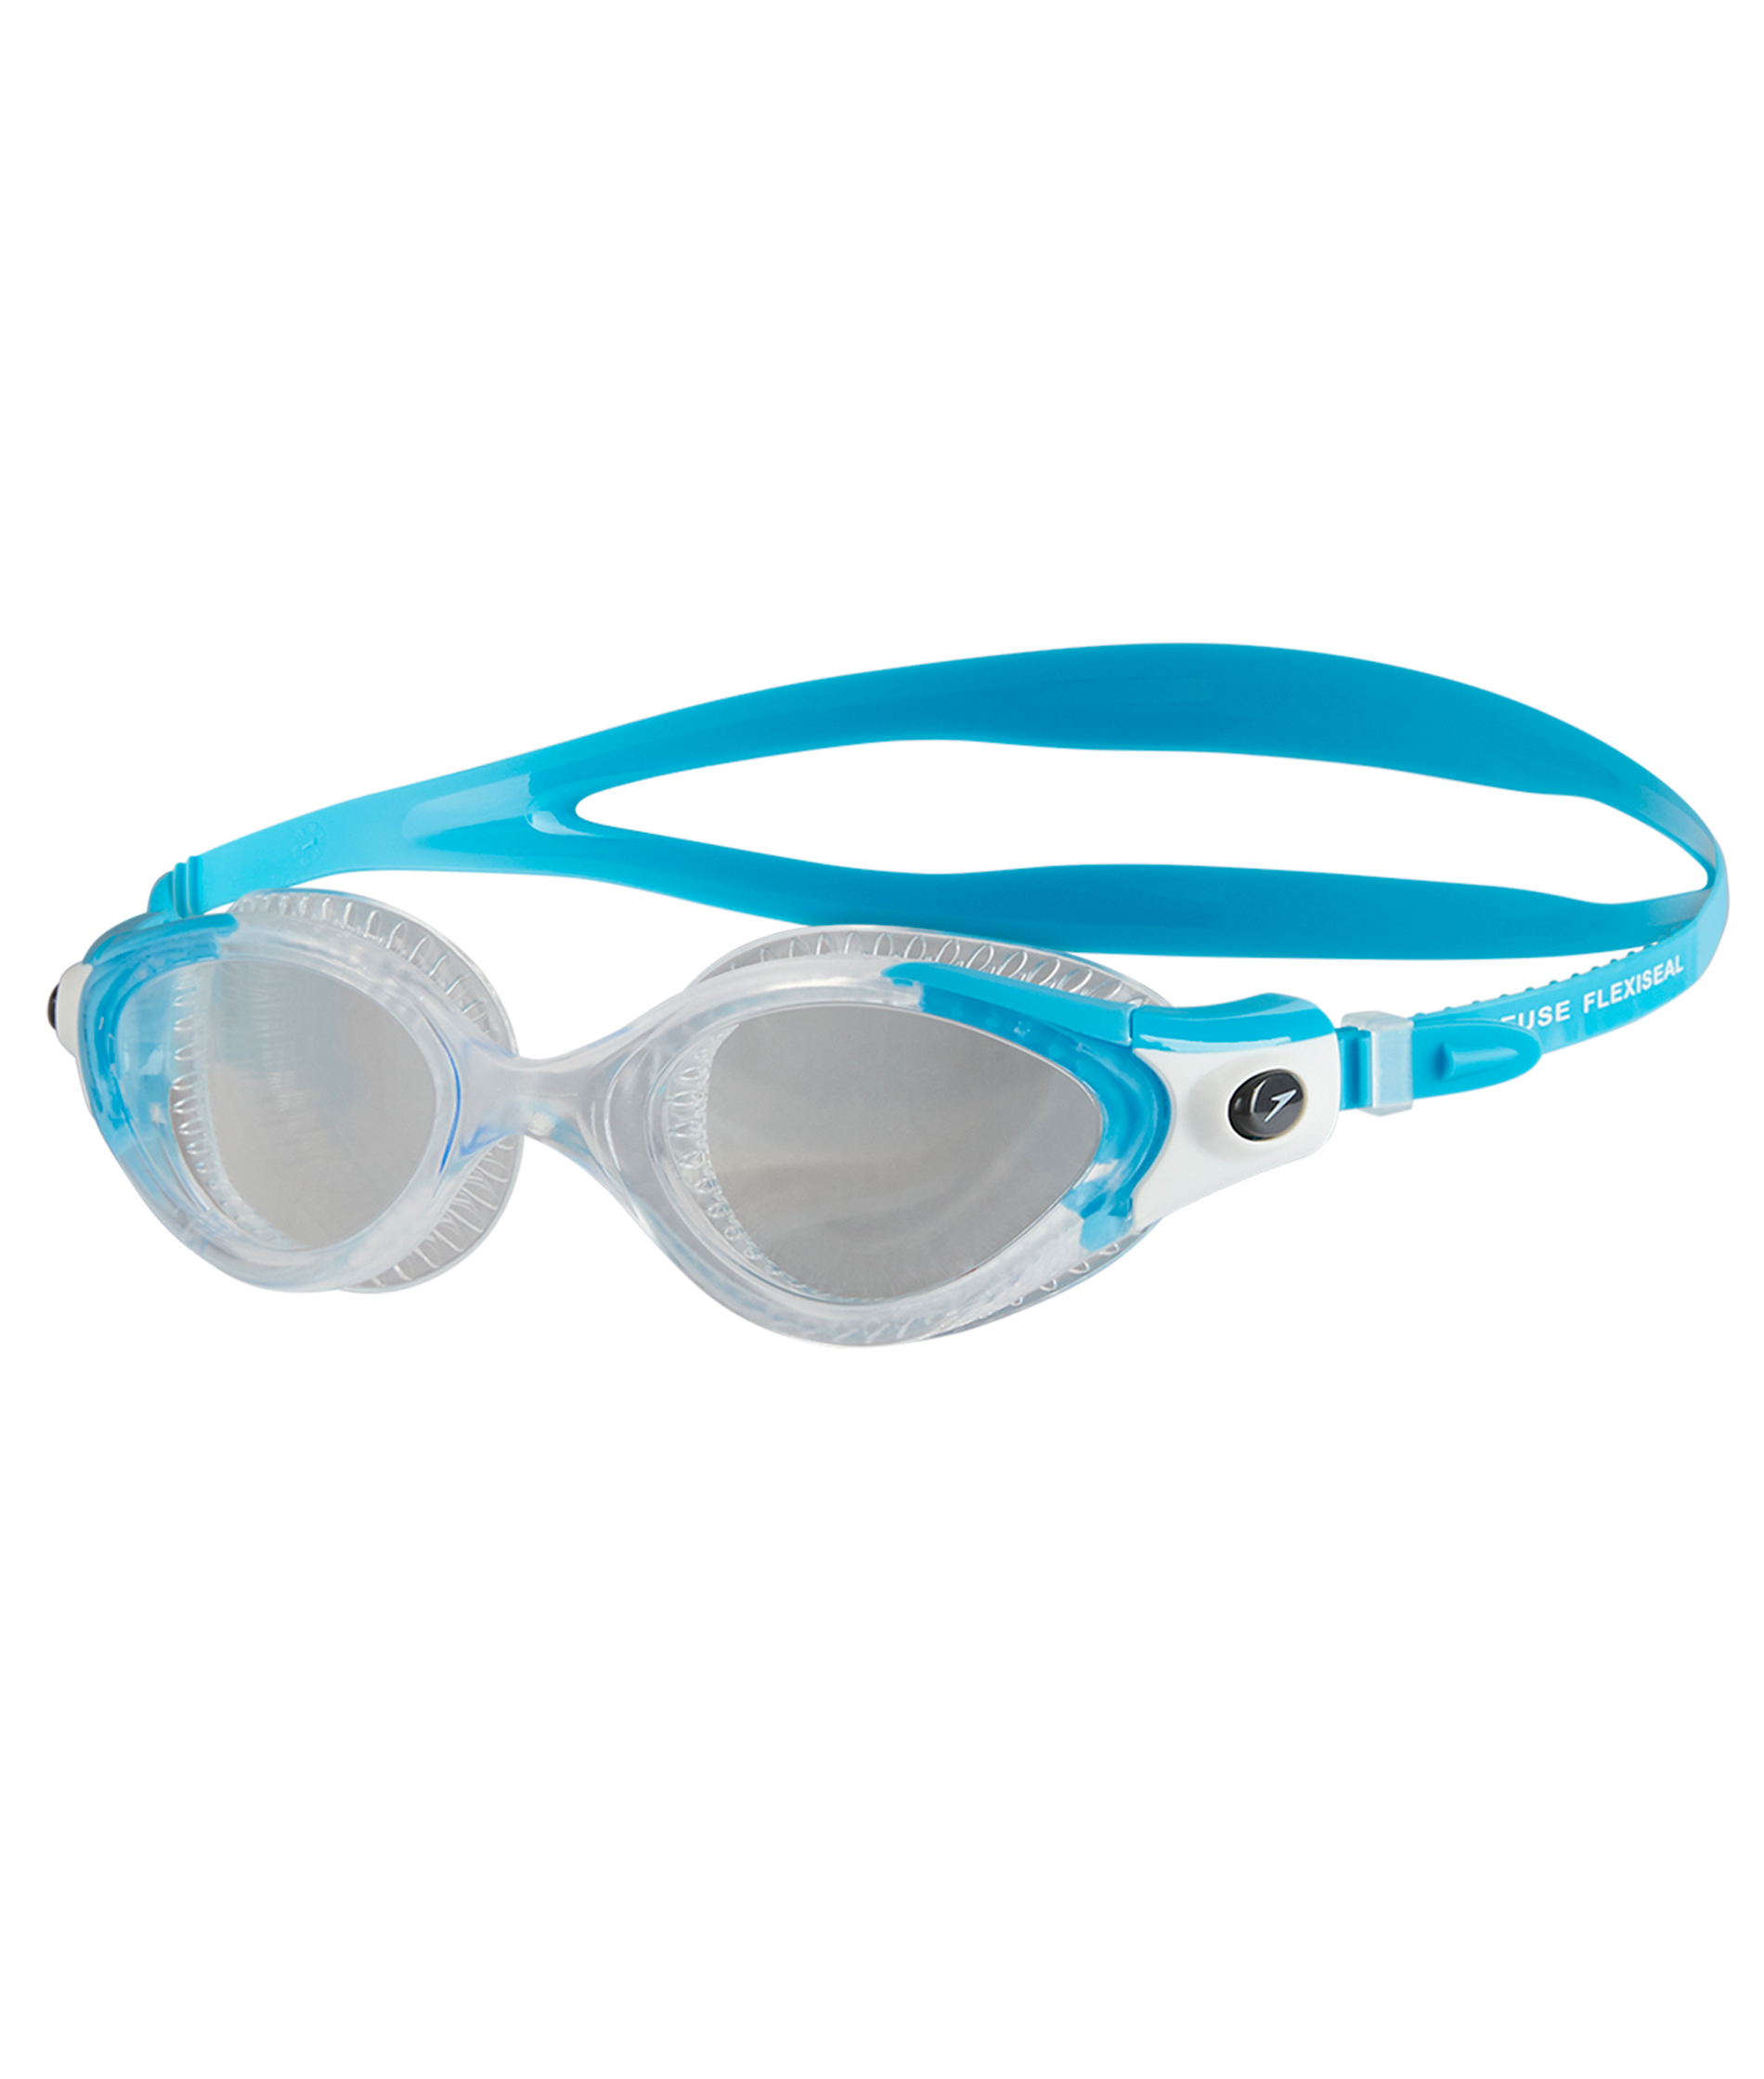 Speedo Futura Biofuse Flexiseal Female Goggle - Blue/Clear